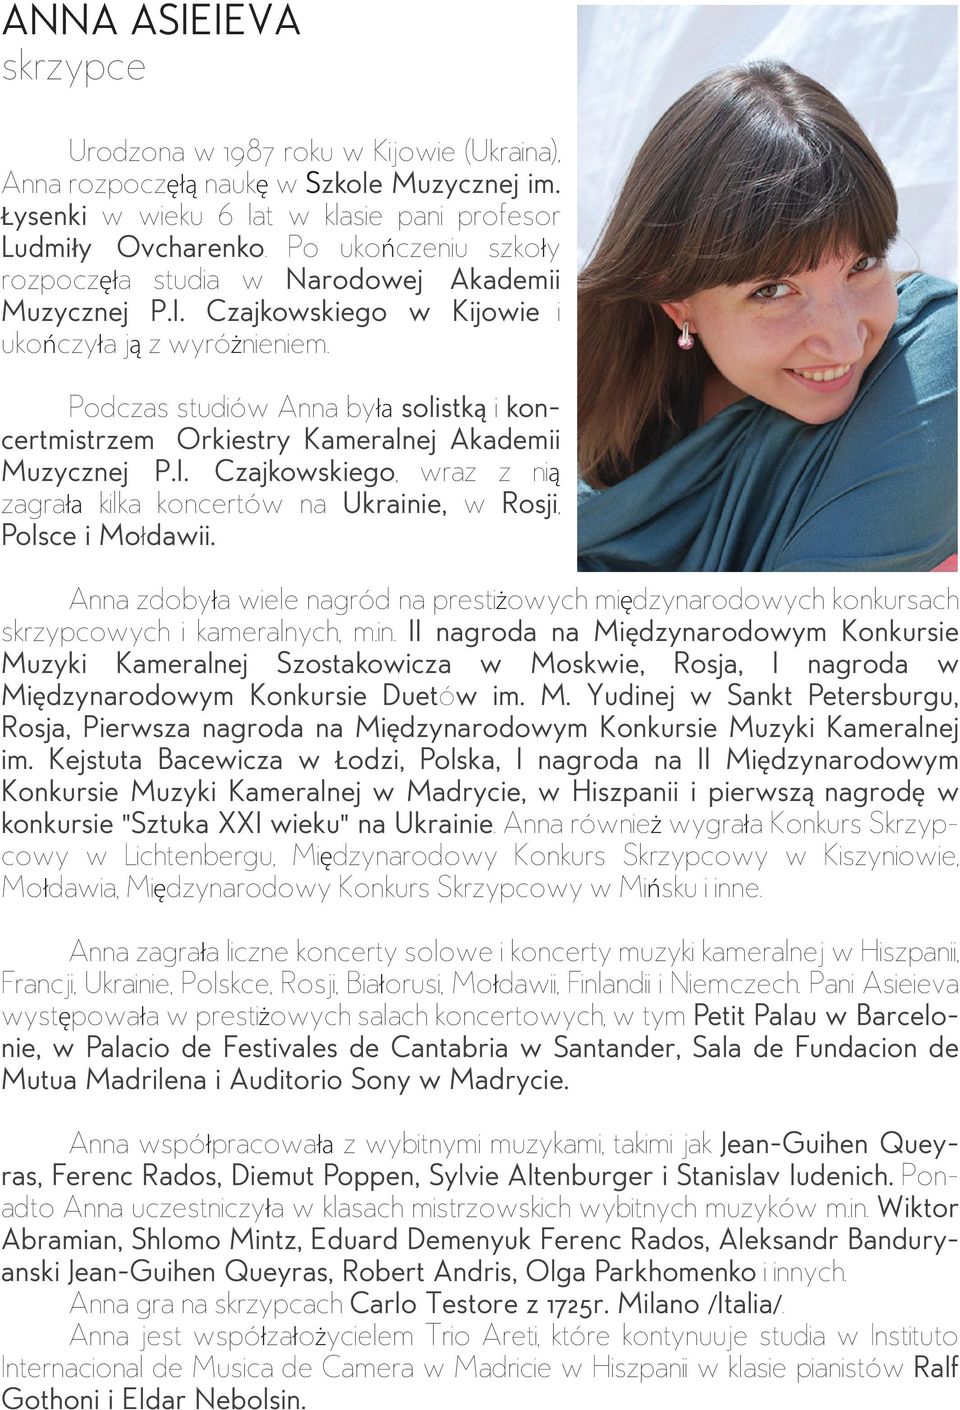 Podczas studiów Anna była solistką i koncertmistrzem Orkiestry Kameralnej Akademii Muzycznej P.I. Czajkowskiego, wraz z nią zagrała kilka koncertów na Ukrainie, w Rosji, Polsce i Mołdawii.